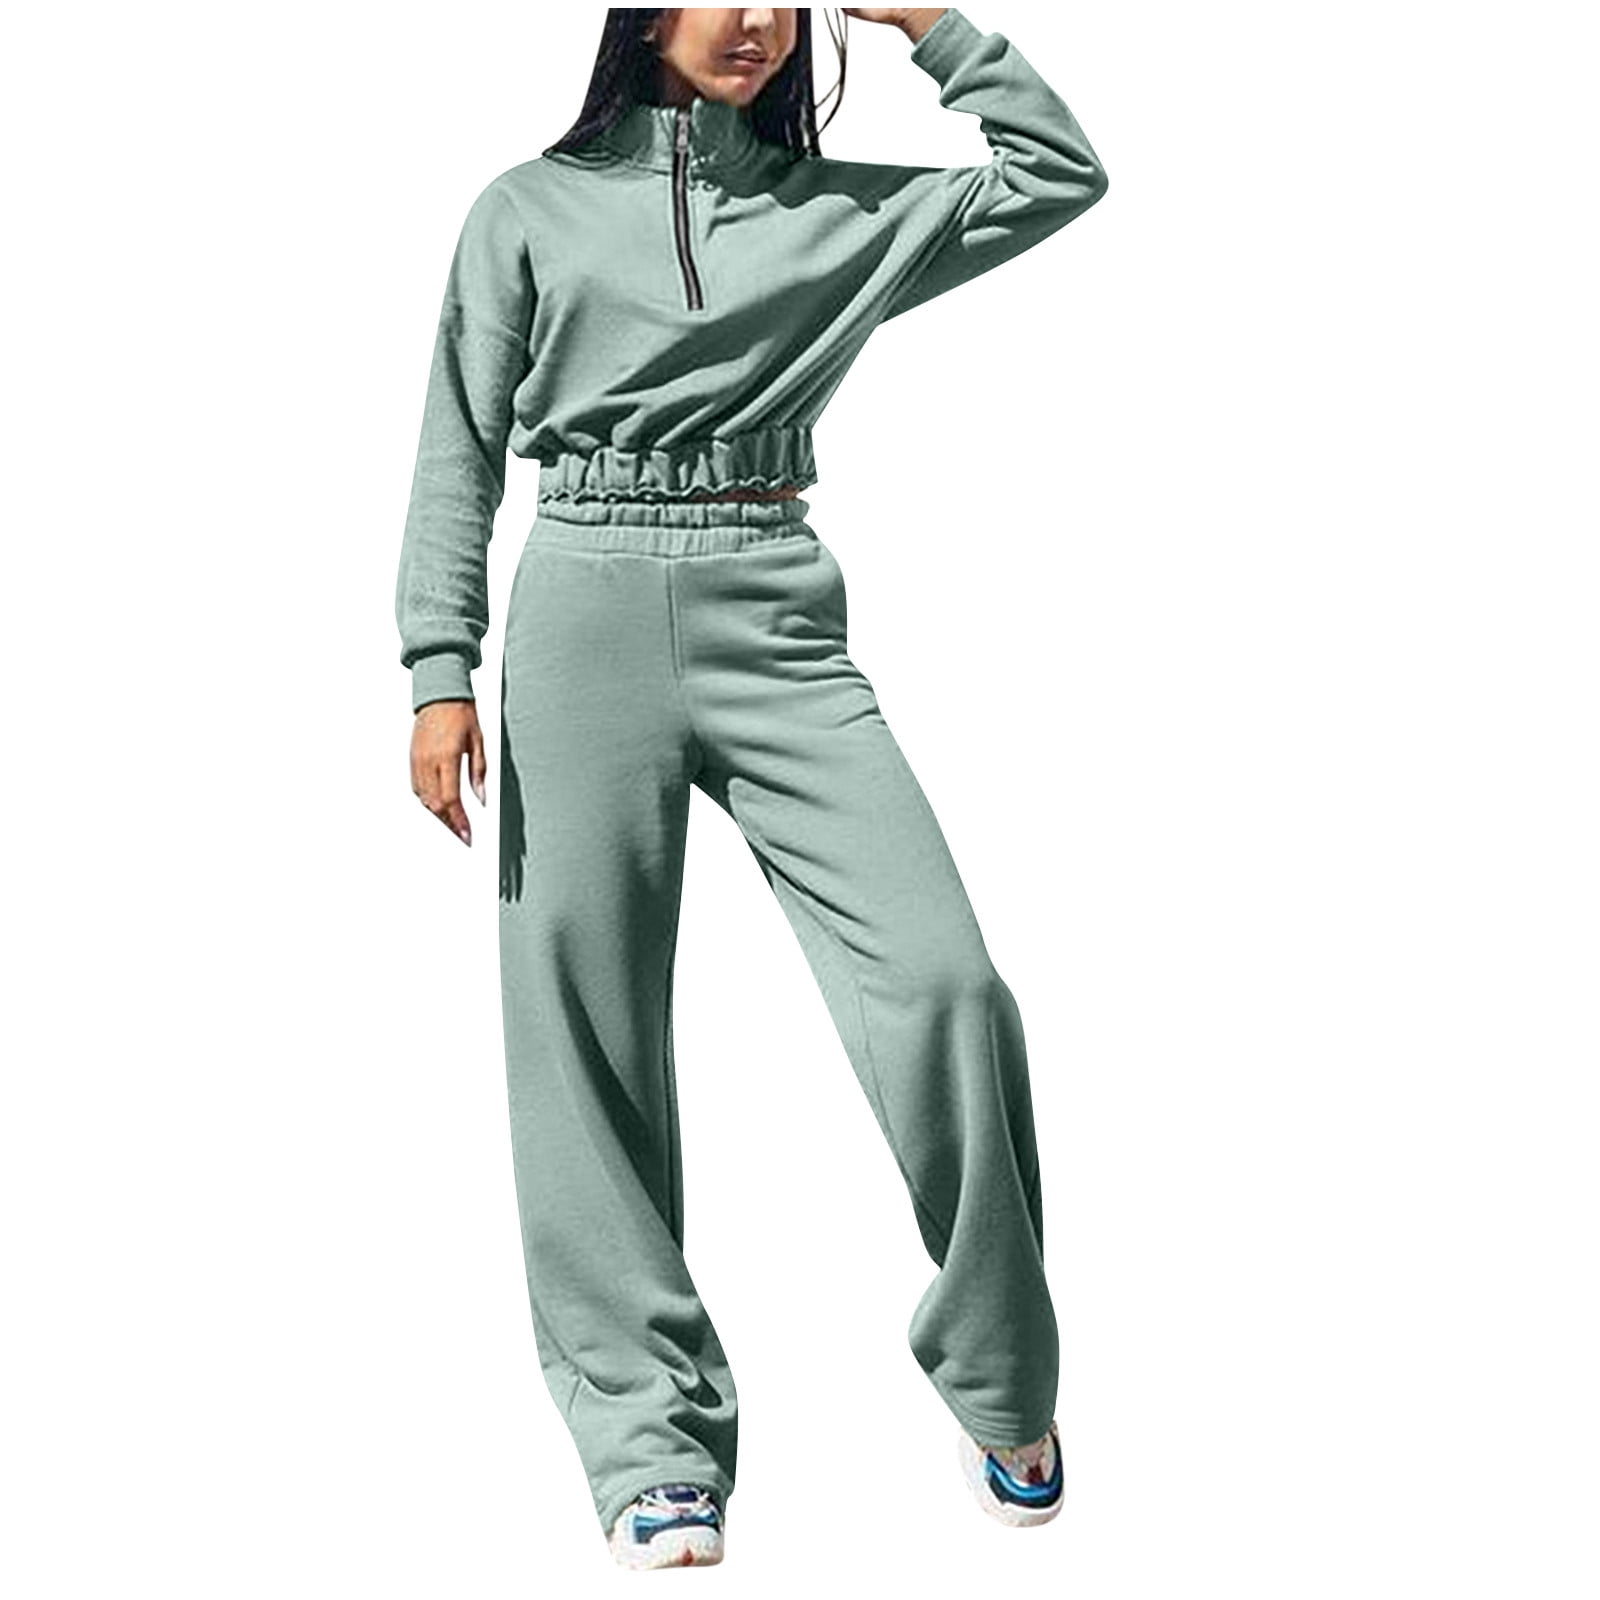 RQYYD Jogging Suits Women 2 Piece Sweatsuit Outfits Long Sleeve Half Zipper Lapel Crop Top Wide Leg Pants Solid Color Tracksuit Set Green - Walmart.com